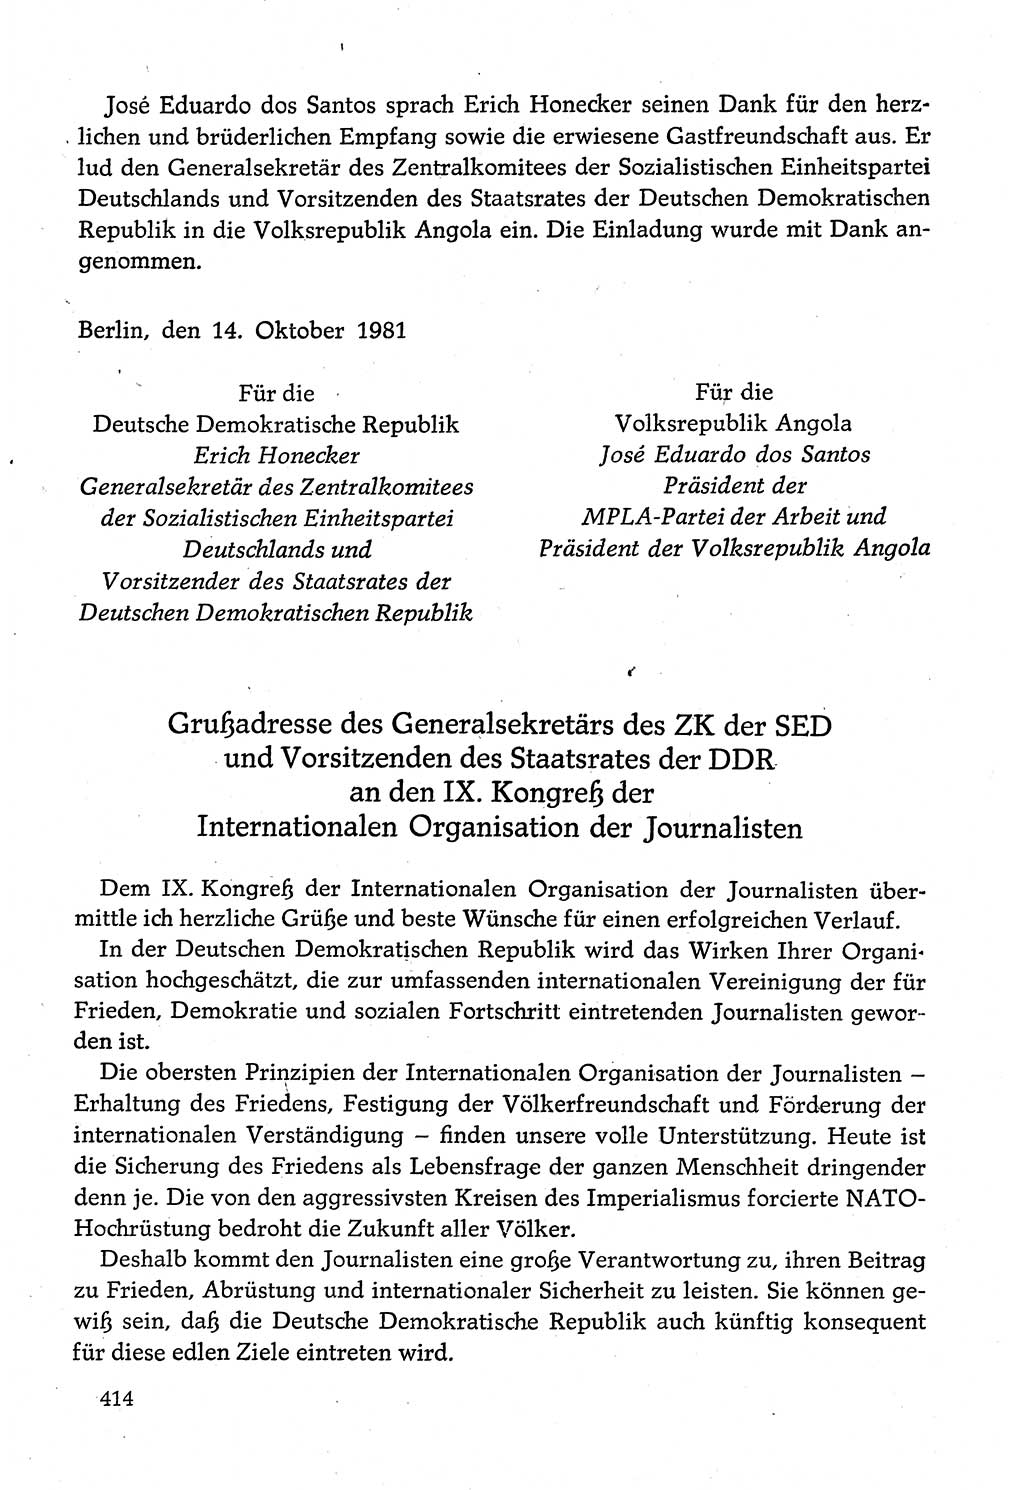 Dokumente der Sozialistischen Einheitspartei Deutschlands (SED) [Deutsche Demokratische Republik (DDR)] 1980-1981, Seite 414 (Dok. SED DDR 1980-1981, S. 414)